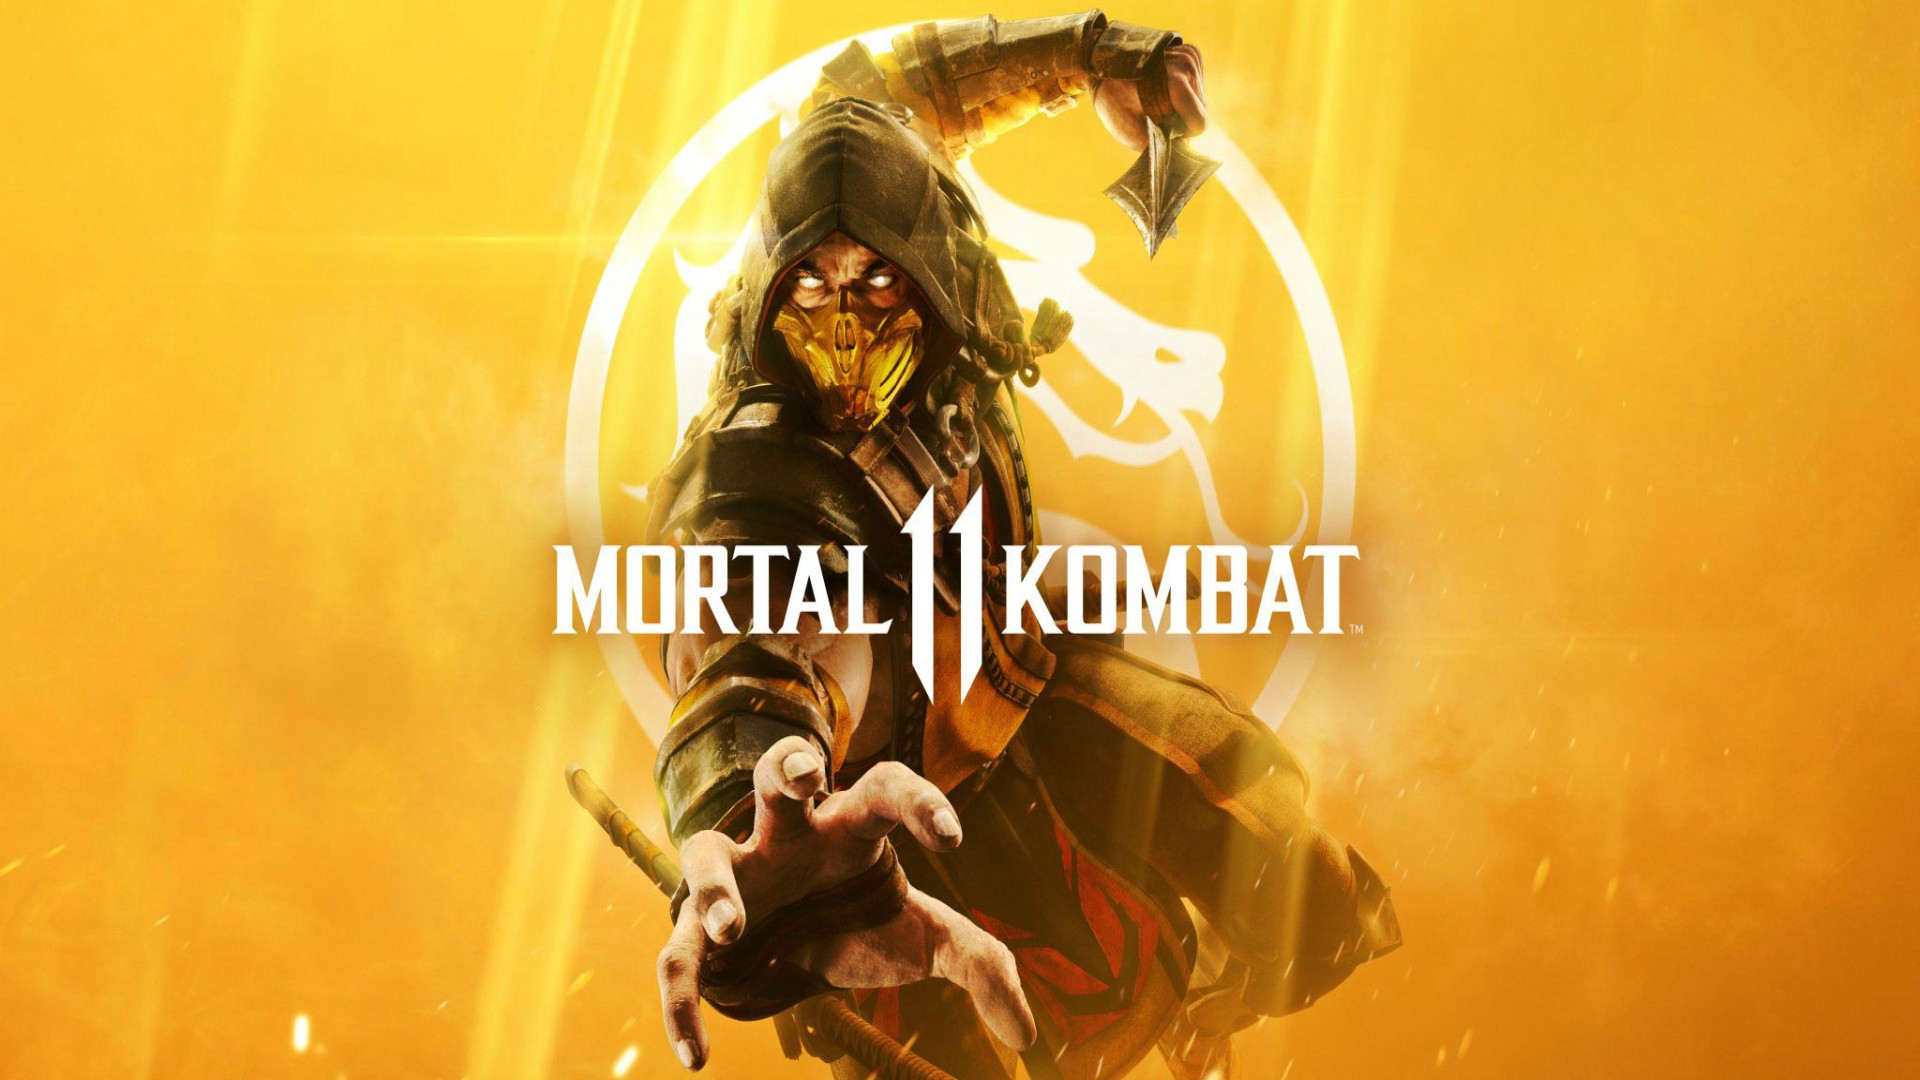 Mortal Kombat Mortal Kombat 11 Scorpion Mortal Kombat 1920x1080